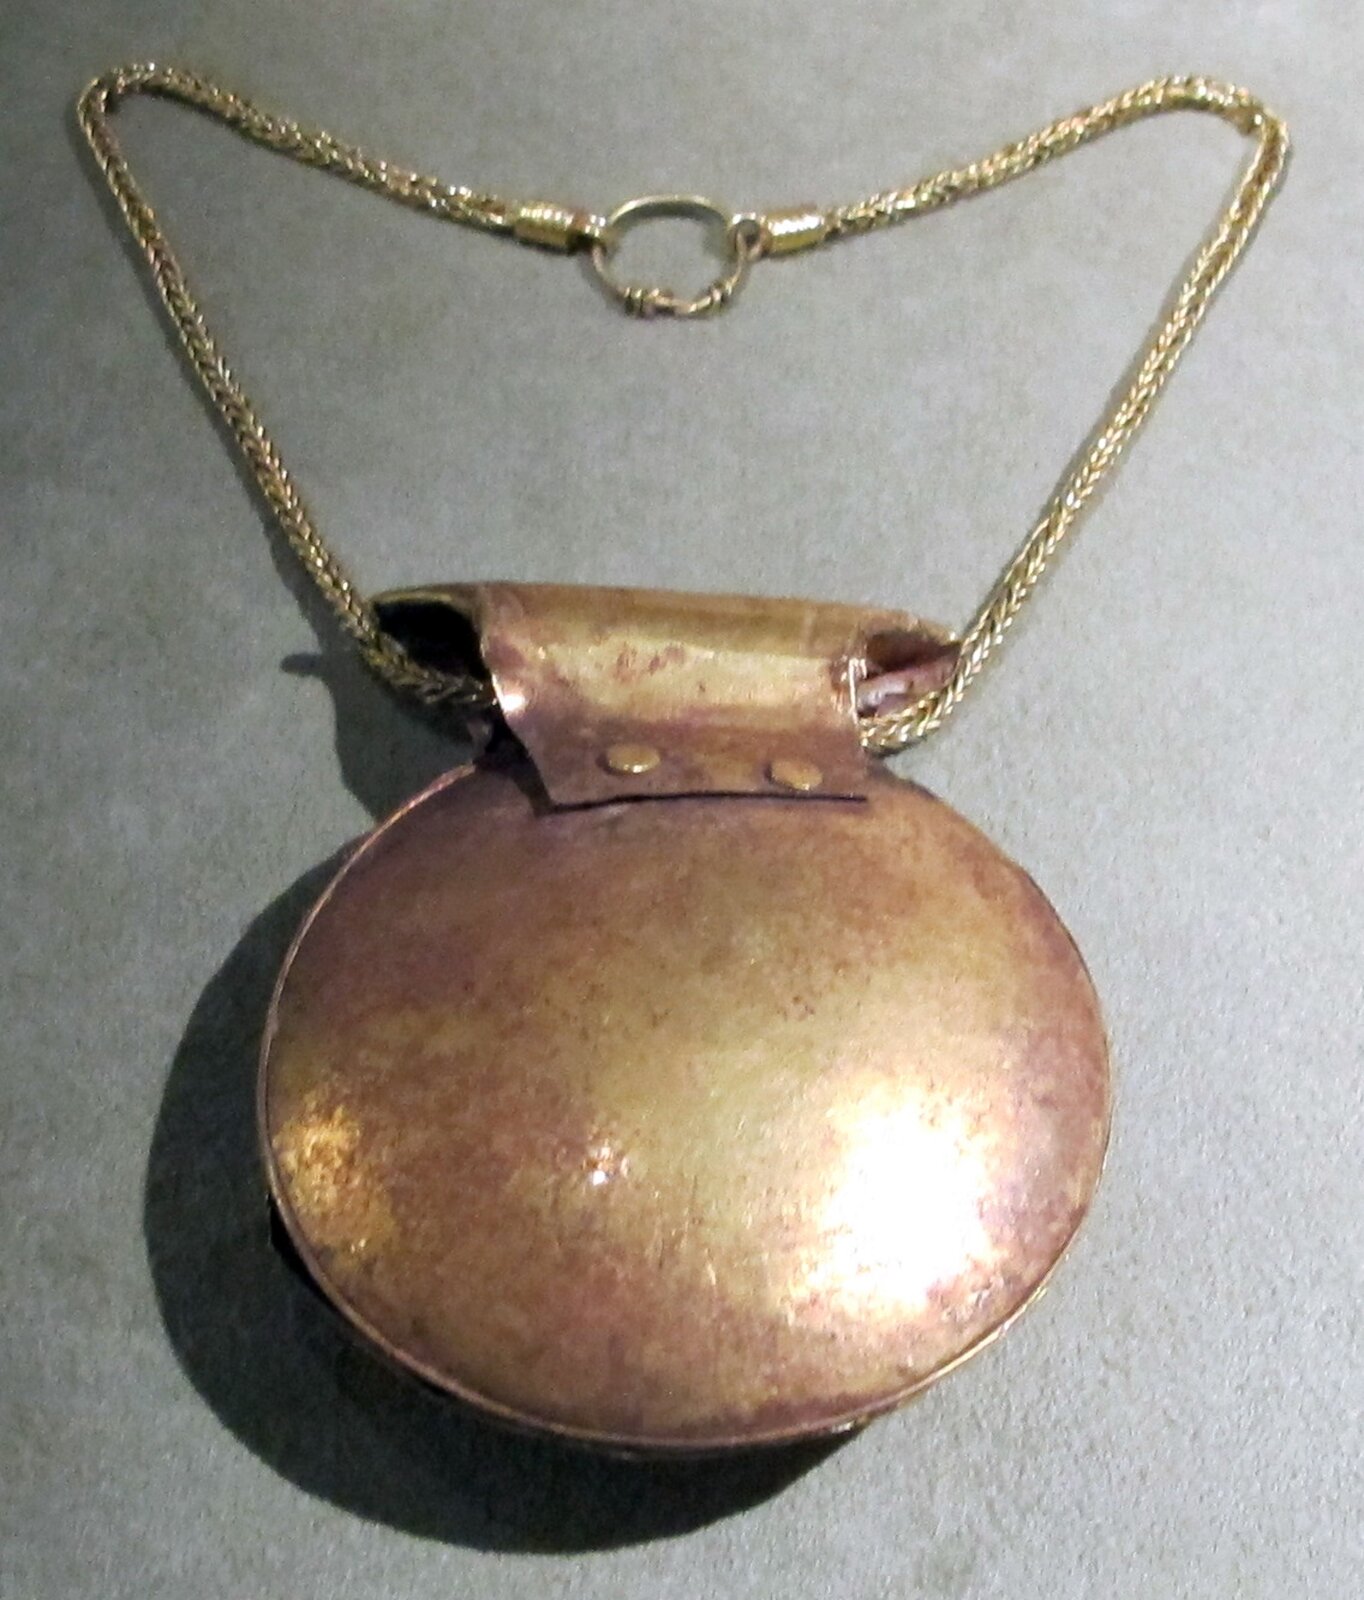 Fotografia nieznanego autora przedstawia złoty medalion, który połączony jest krótkim złotym łańcuchem. Fotografia medalionu została wykonana na szarym tle. Medalion ma błyszczącą obudowę.